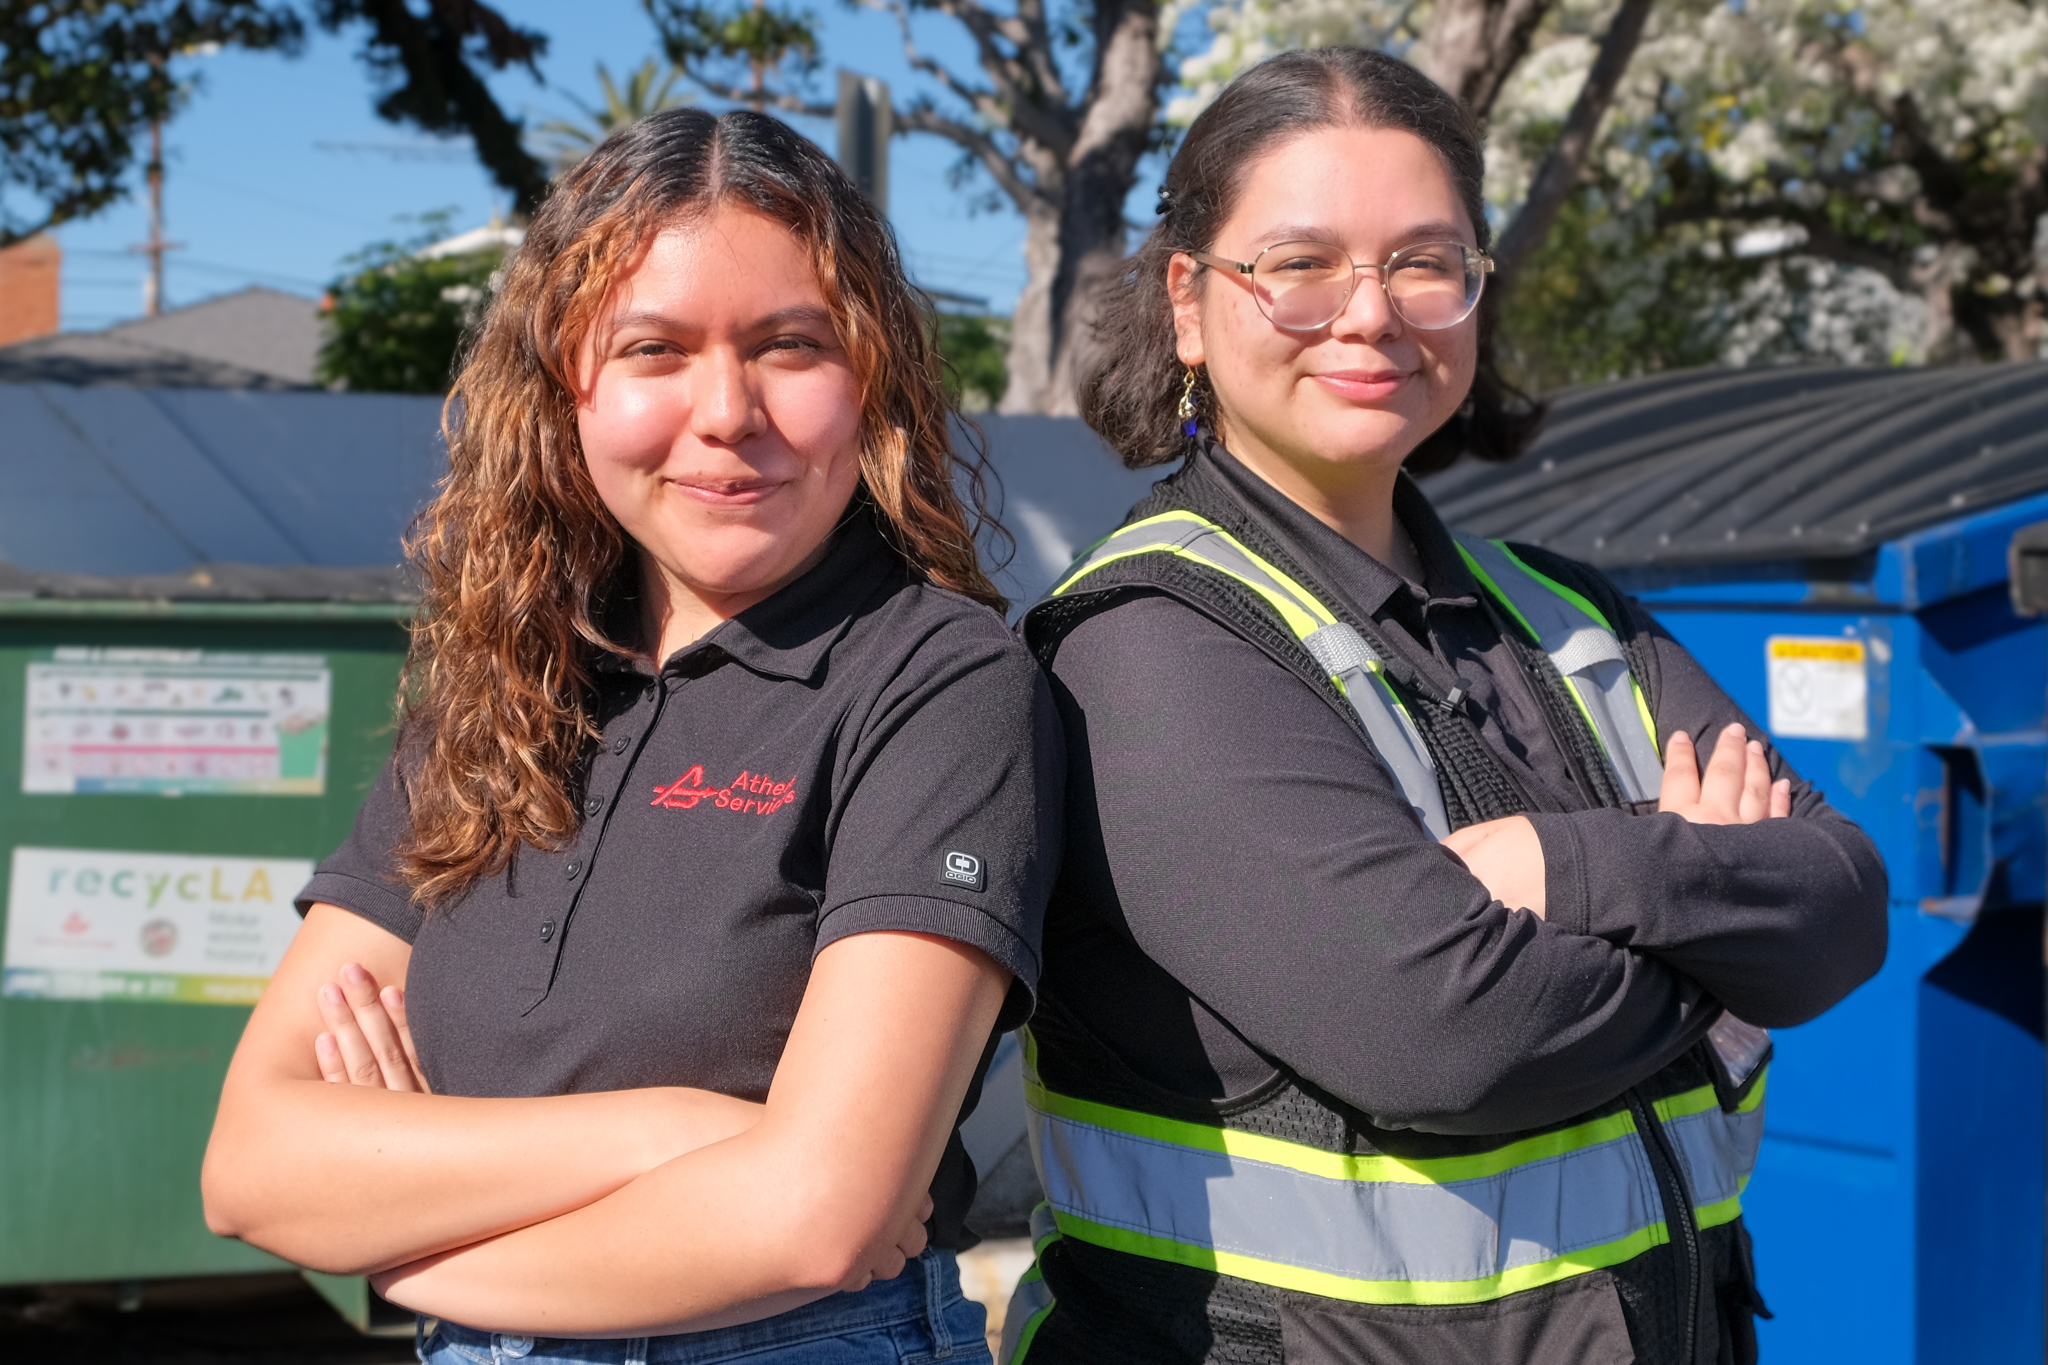 Recycling Coordinators Carolina Guzman and Evelyn Jauregui